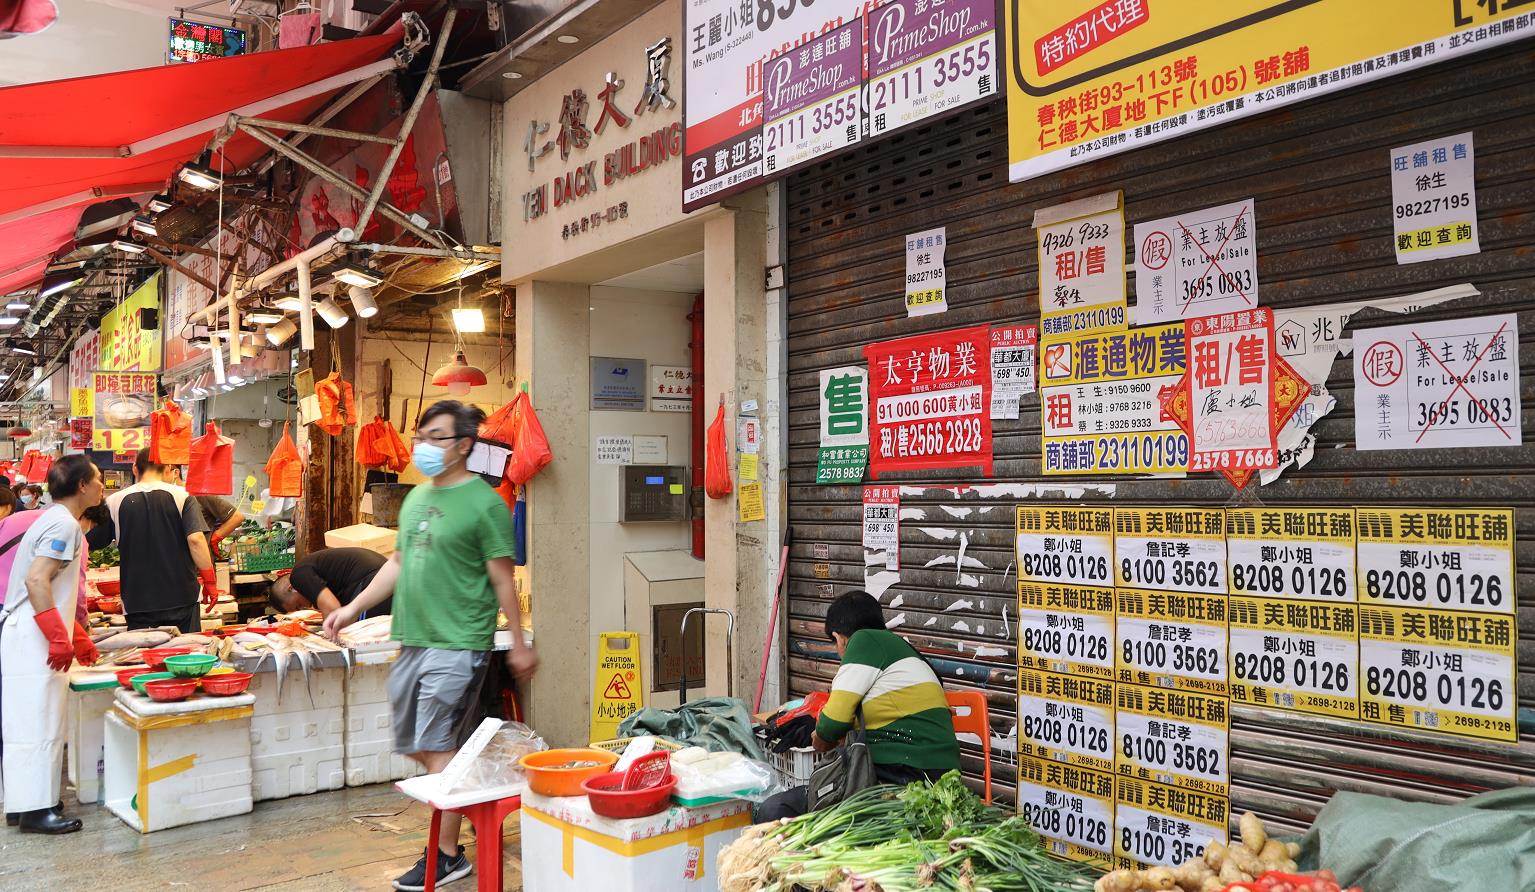 受黑暴及疫情影響A本港的零售業受重創C圖為本港一街市的空置店鋪(中通社圖片)